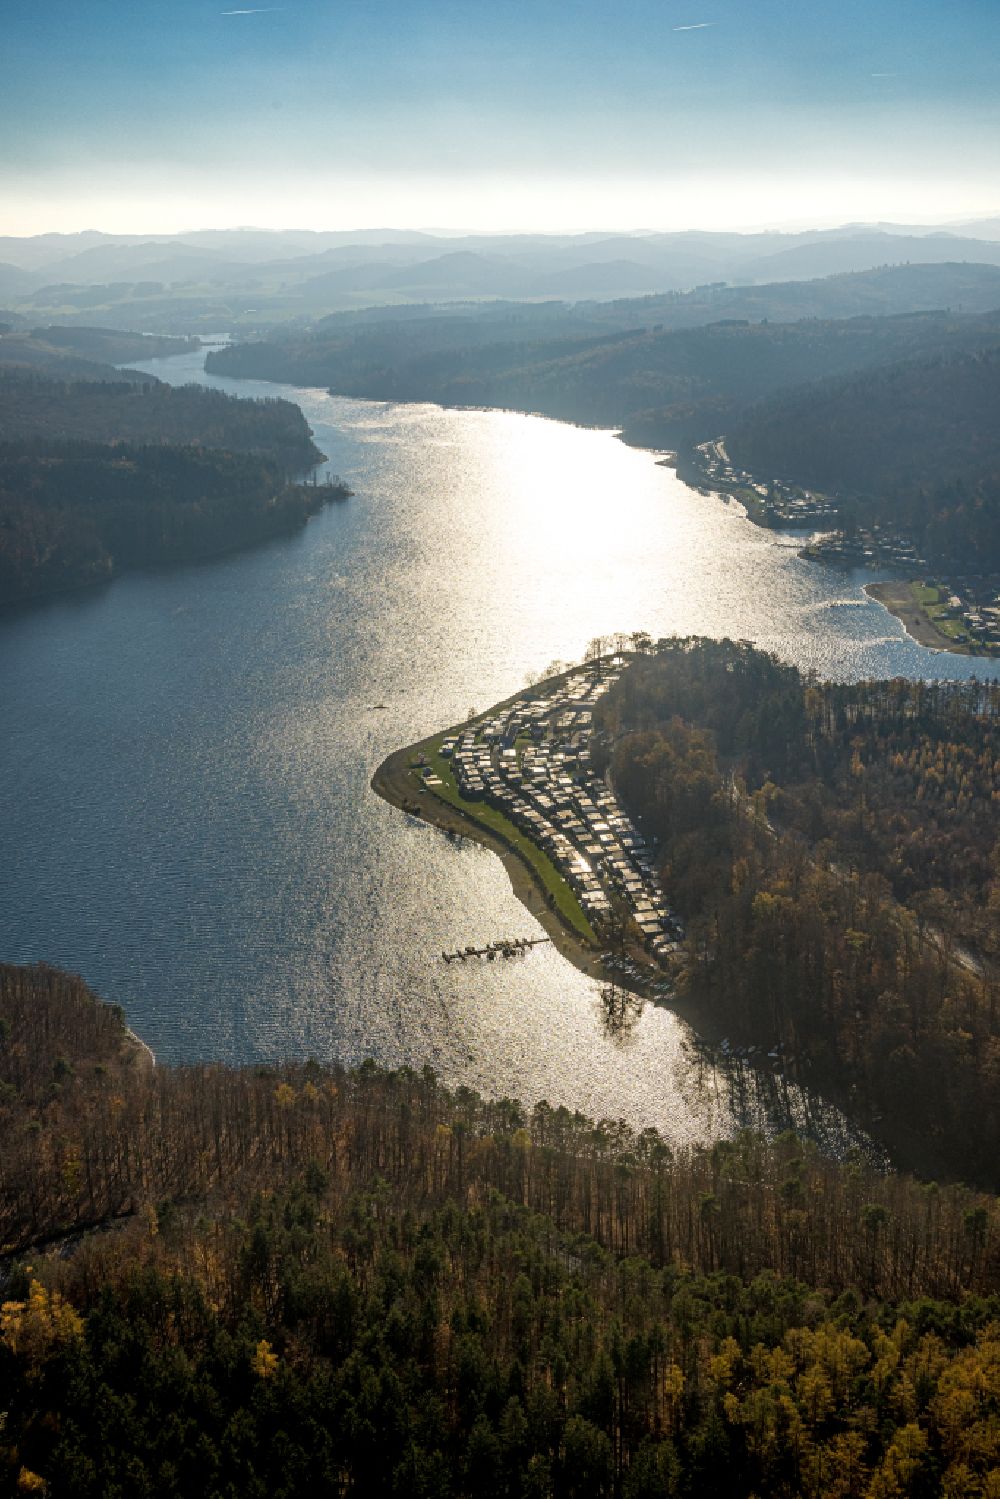 Luftbild Langscheid - Uferbereiche des Sees Sorpesee in Langscheid im Bundesland Nordrhein-Westfalen, Deutschland